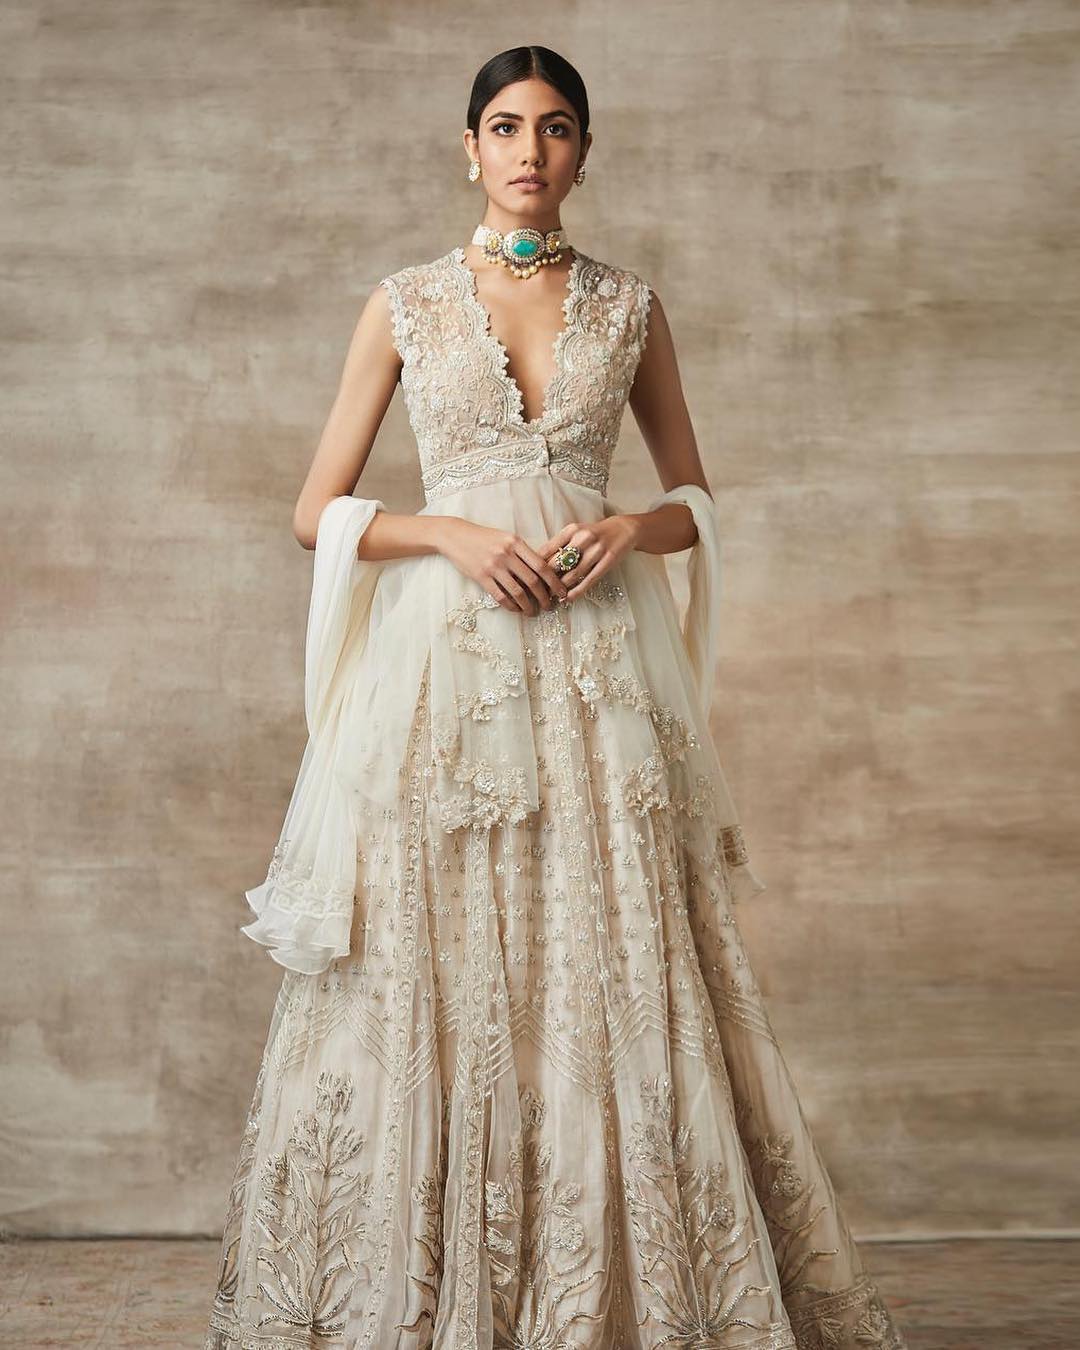 Ridhi Mehra designer dress: Indian Designer Dresses for Traditional Look